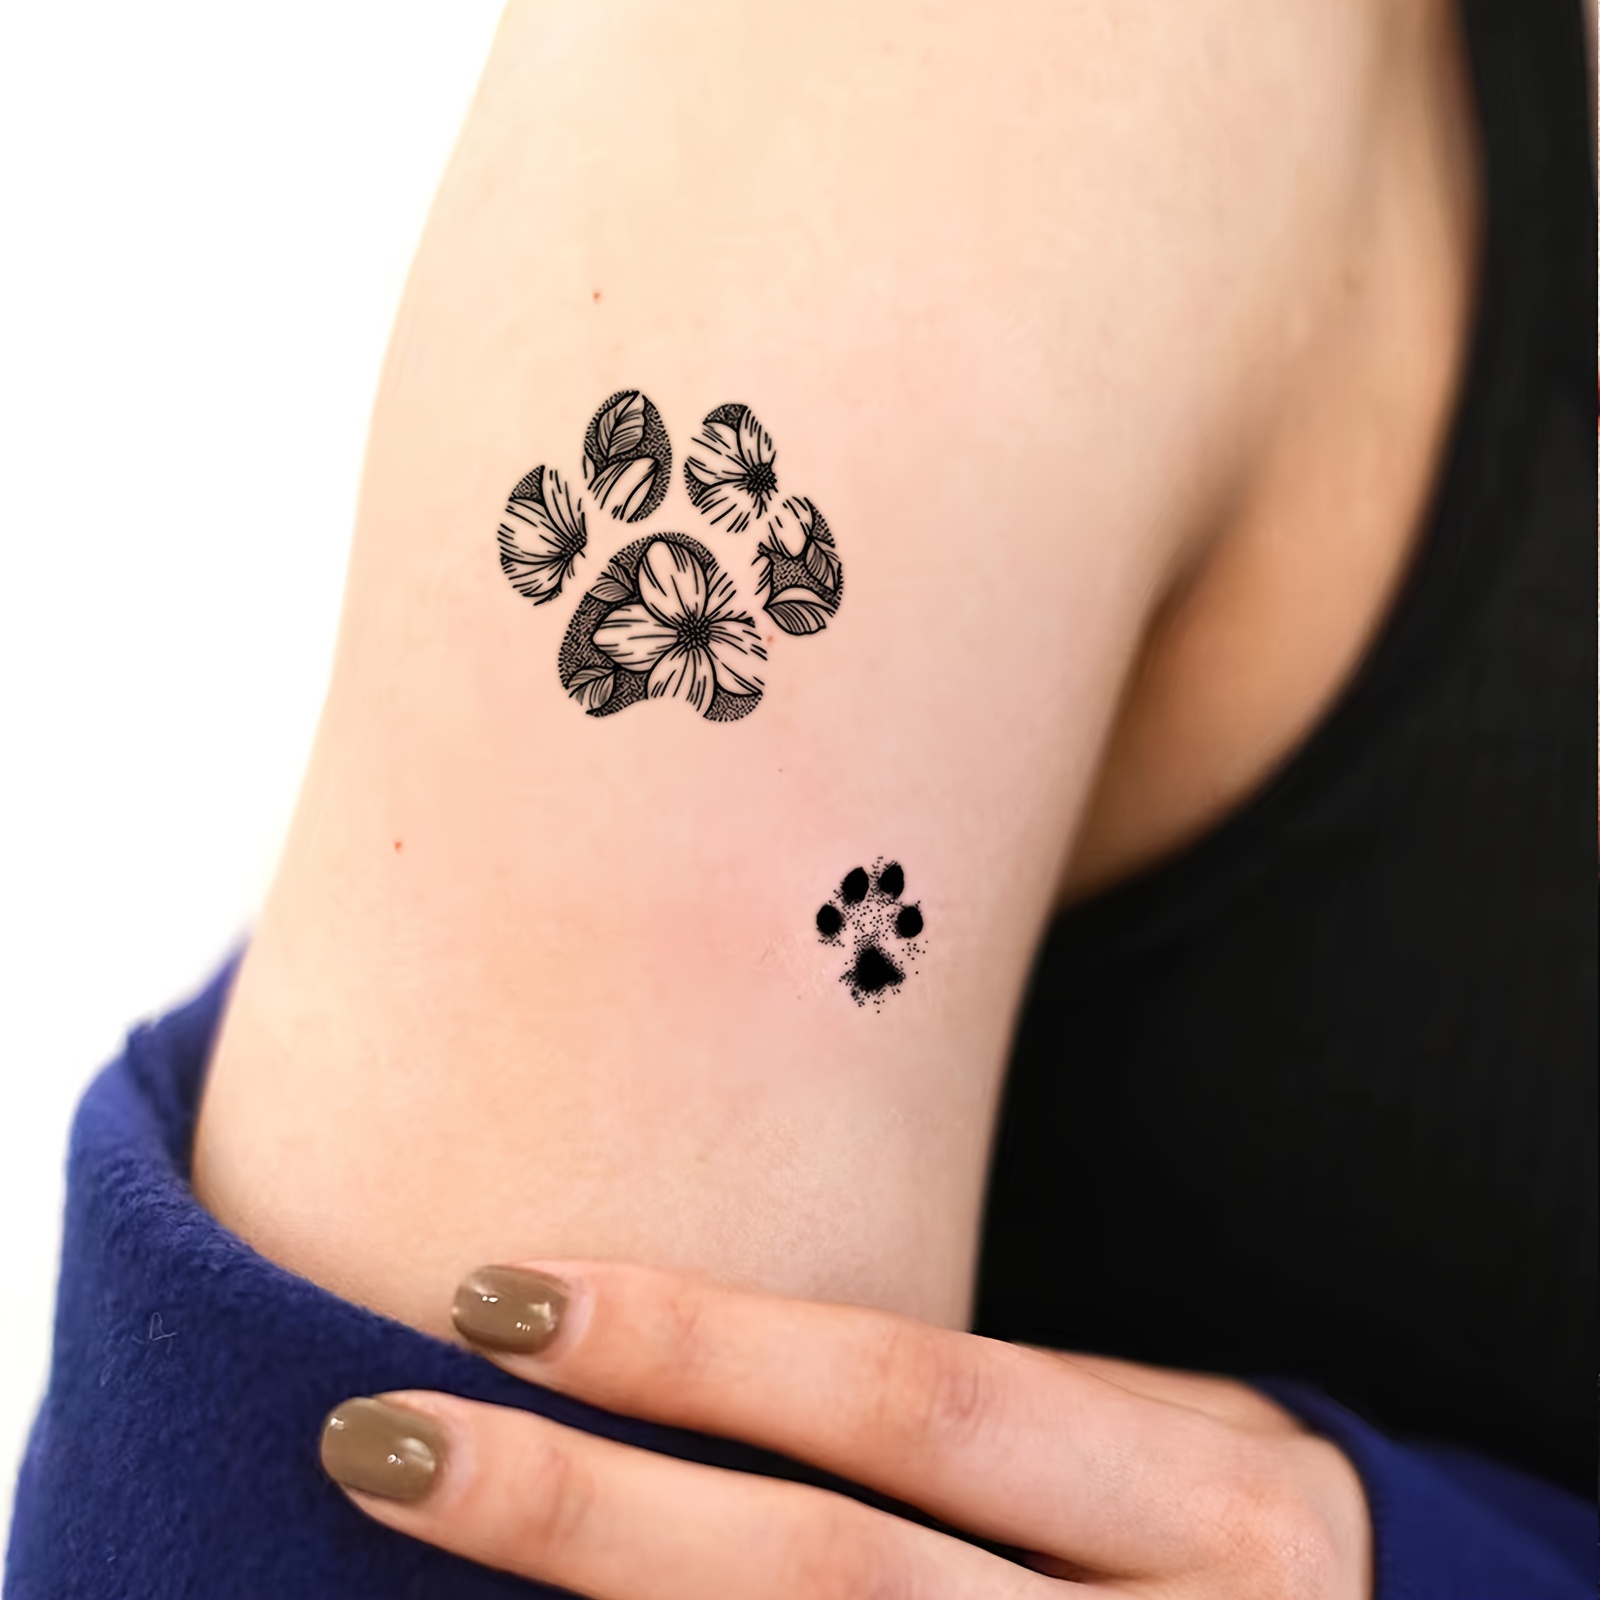 Se faire tatouer la patte de son chien, la nouvelle tendance qui buzze -  Terrafemina